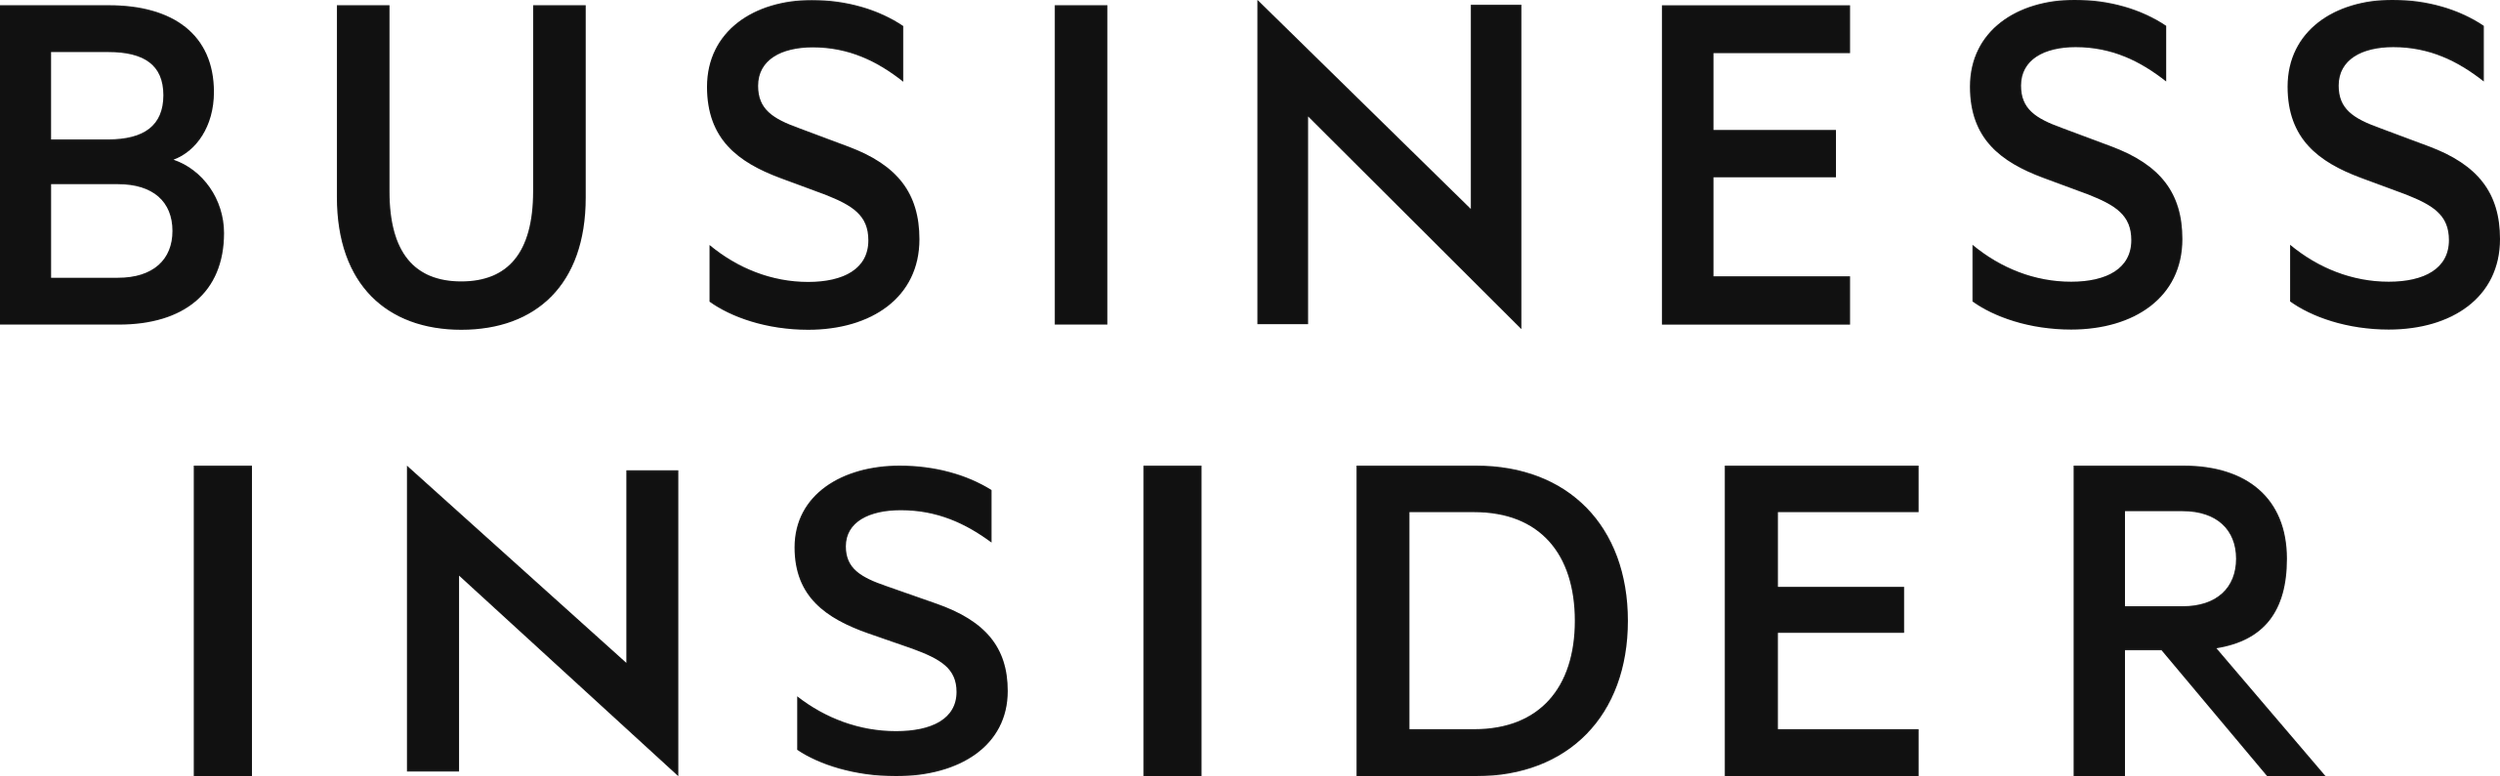 Business_Insider_Logo.png